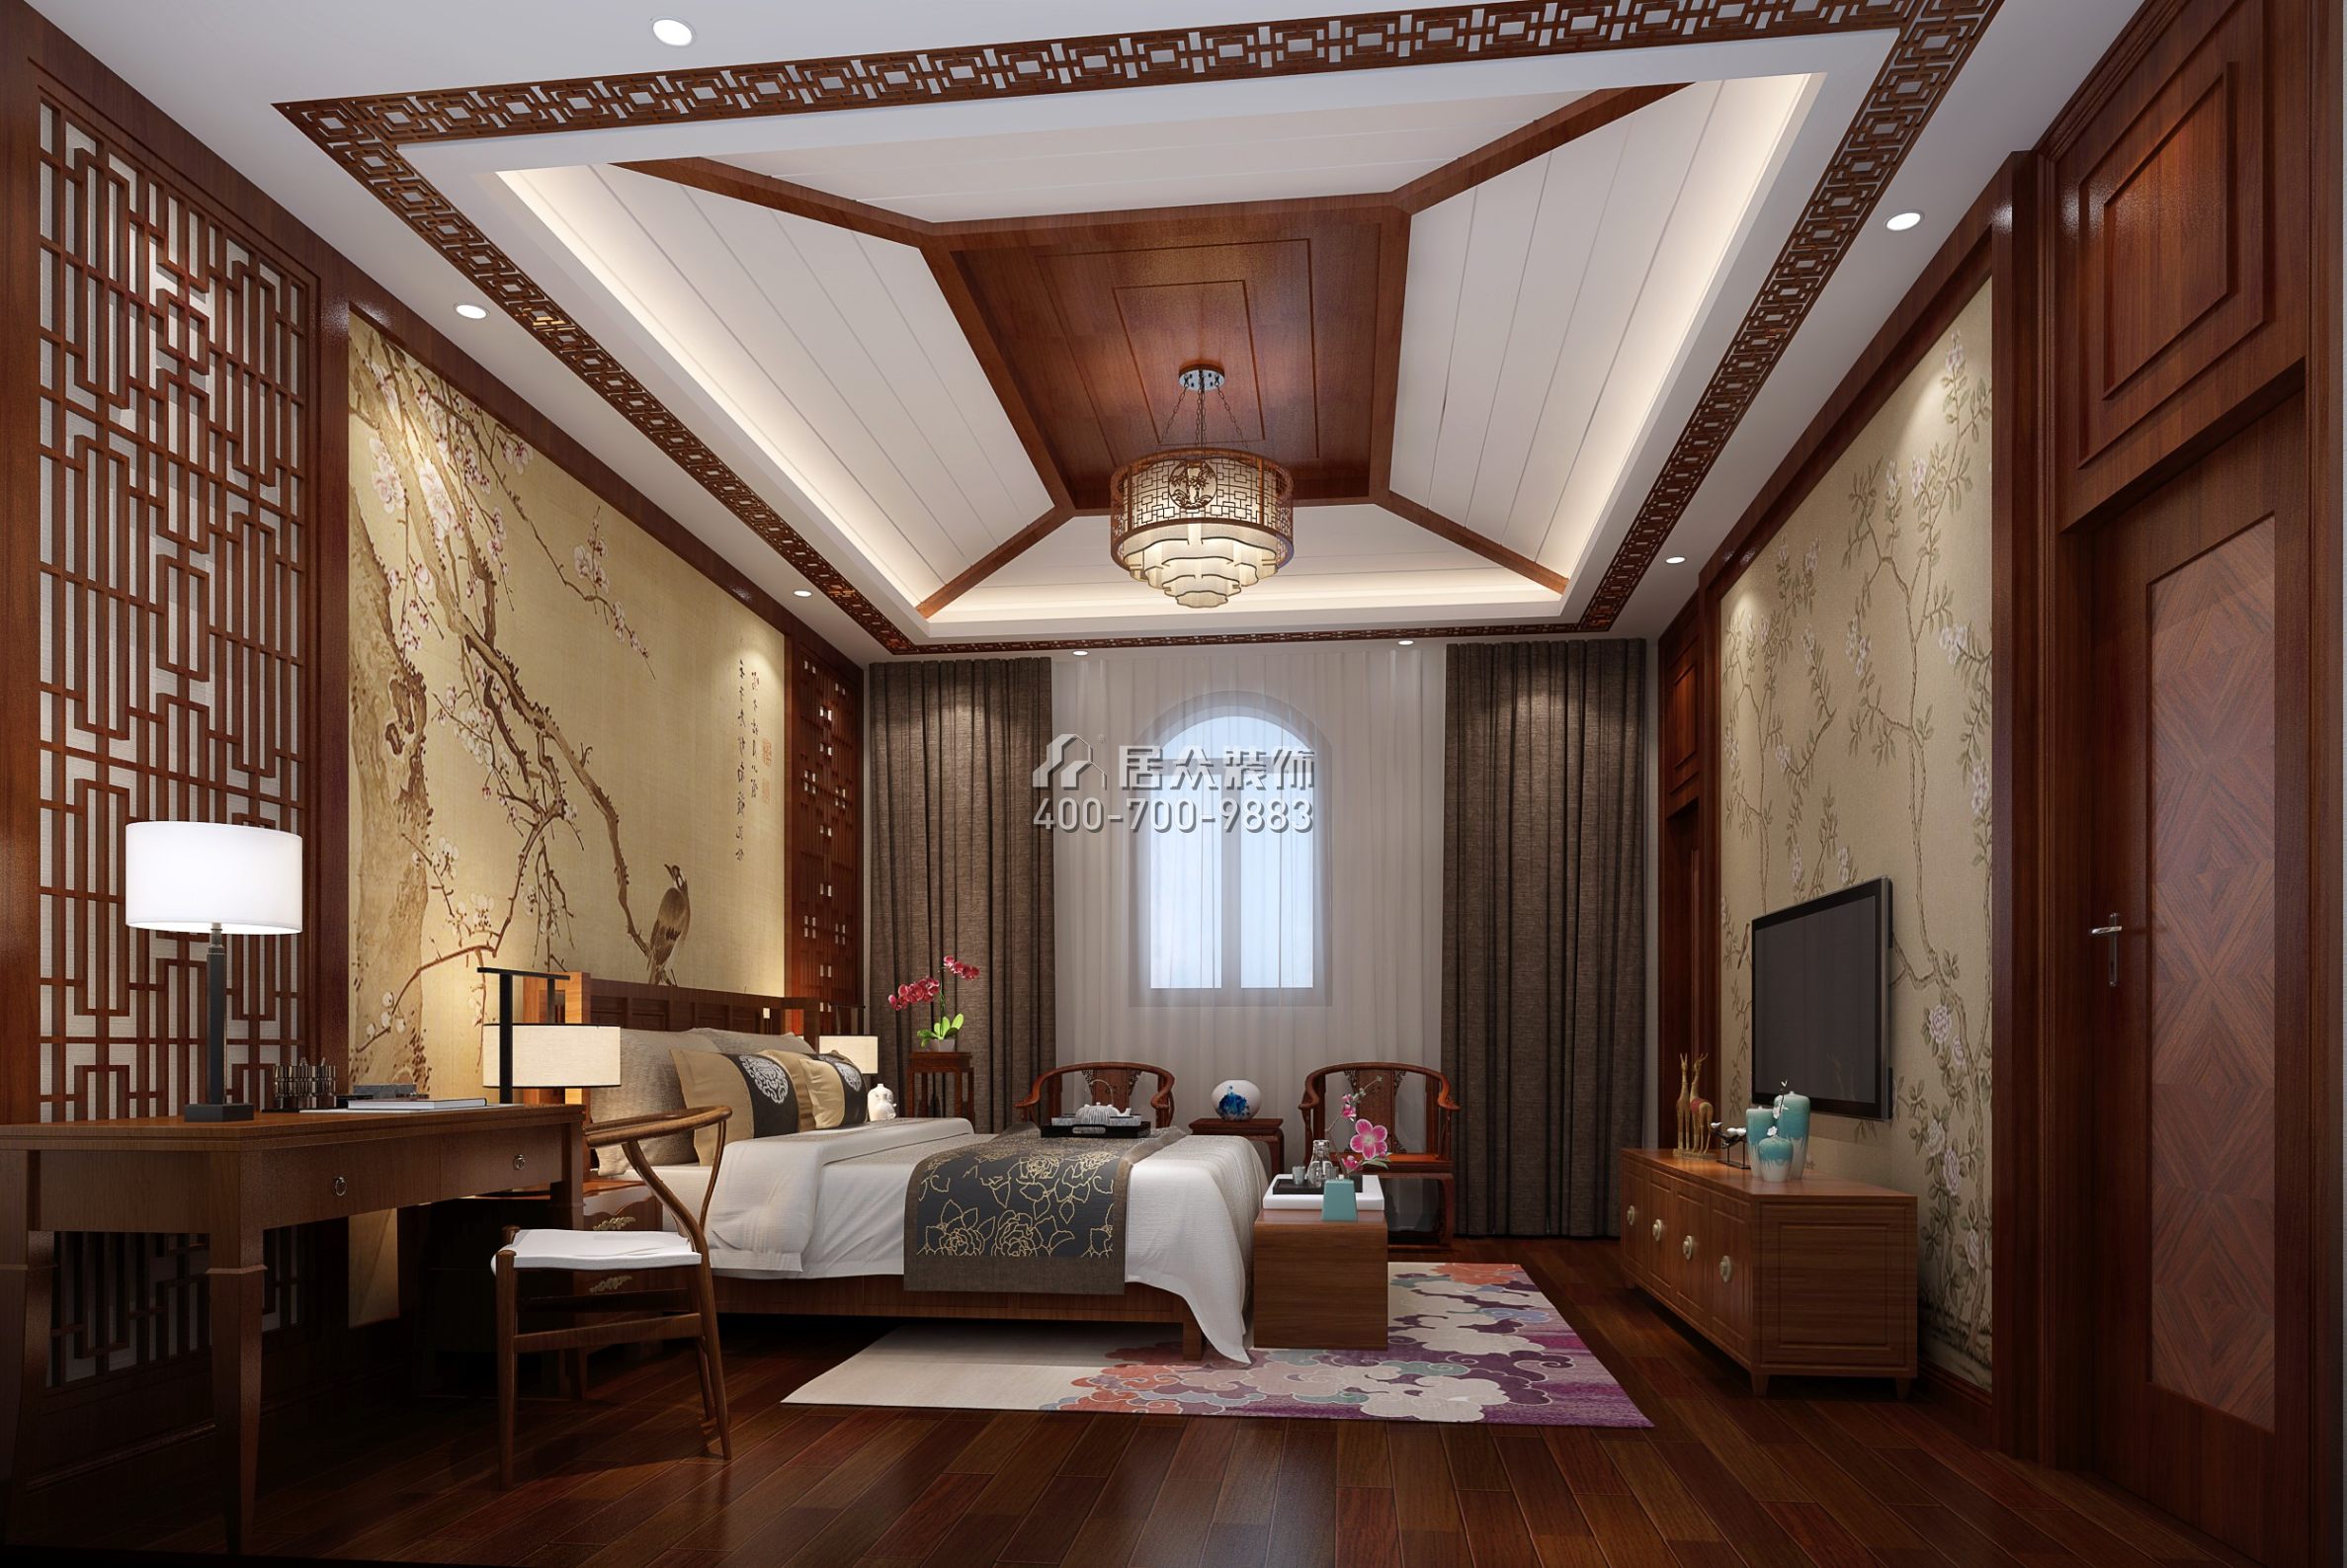 秋長白石自建房340平方米中式風格復式戶型臥室裝修效果圖